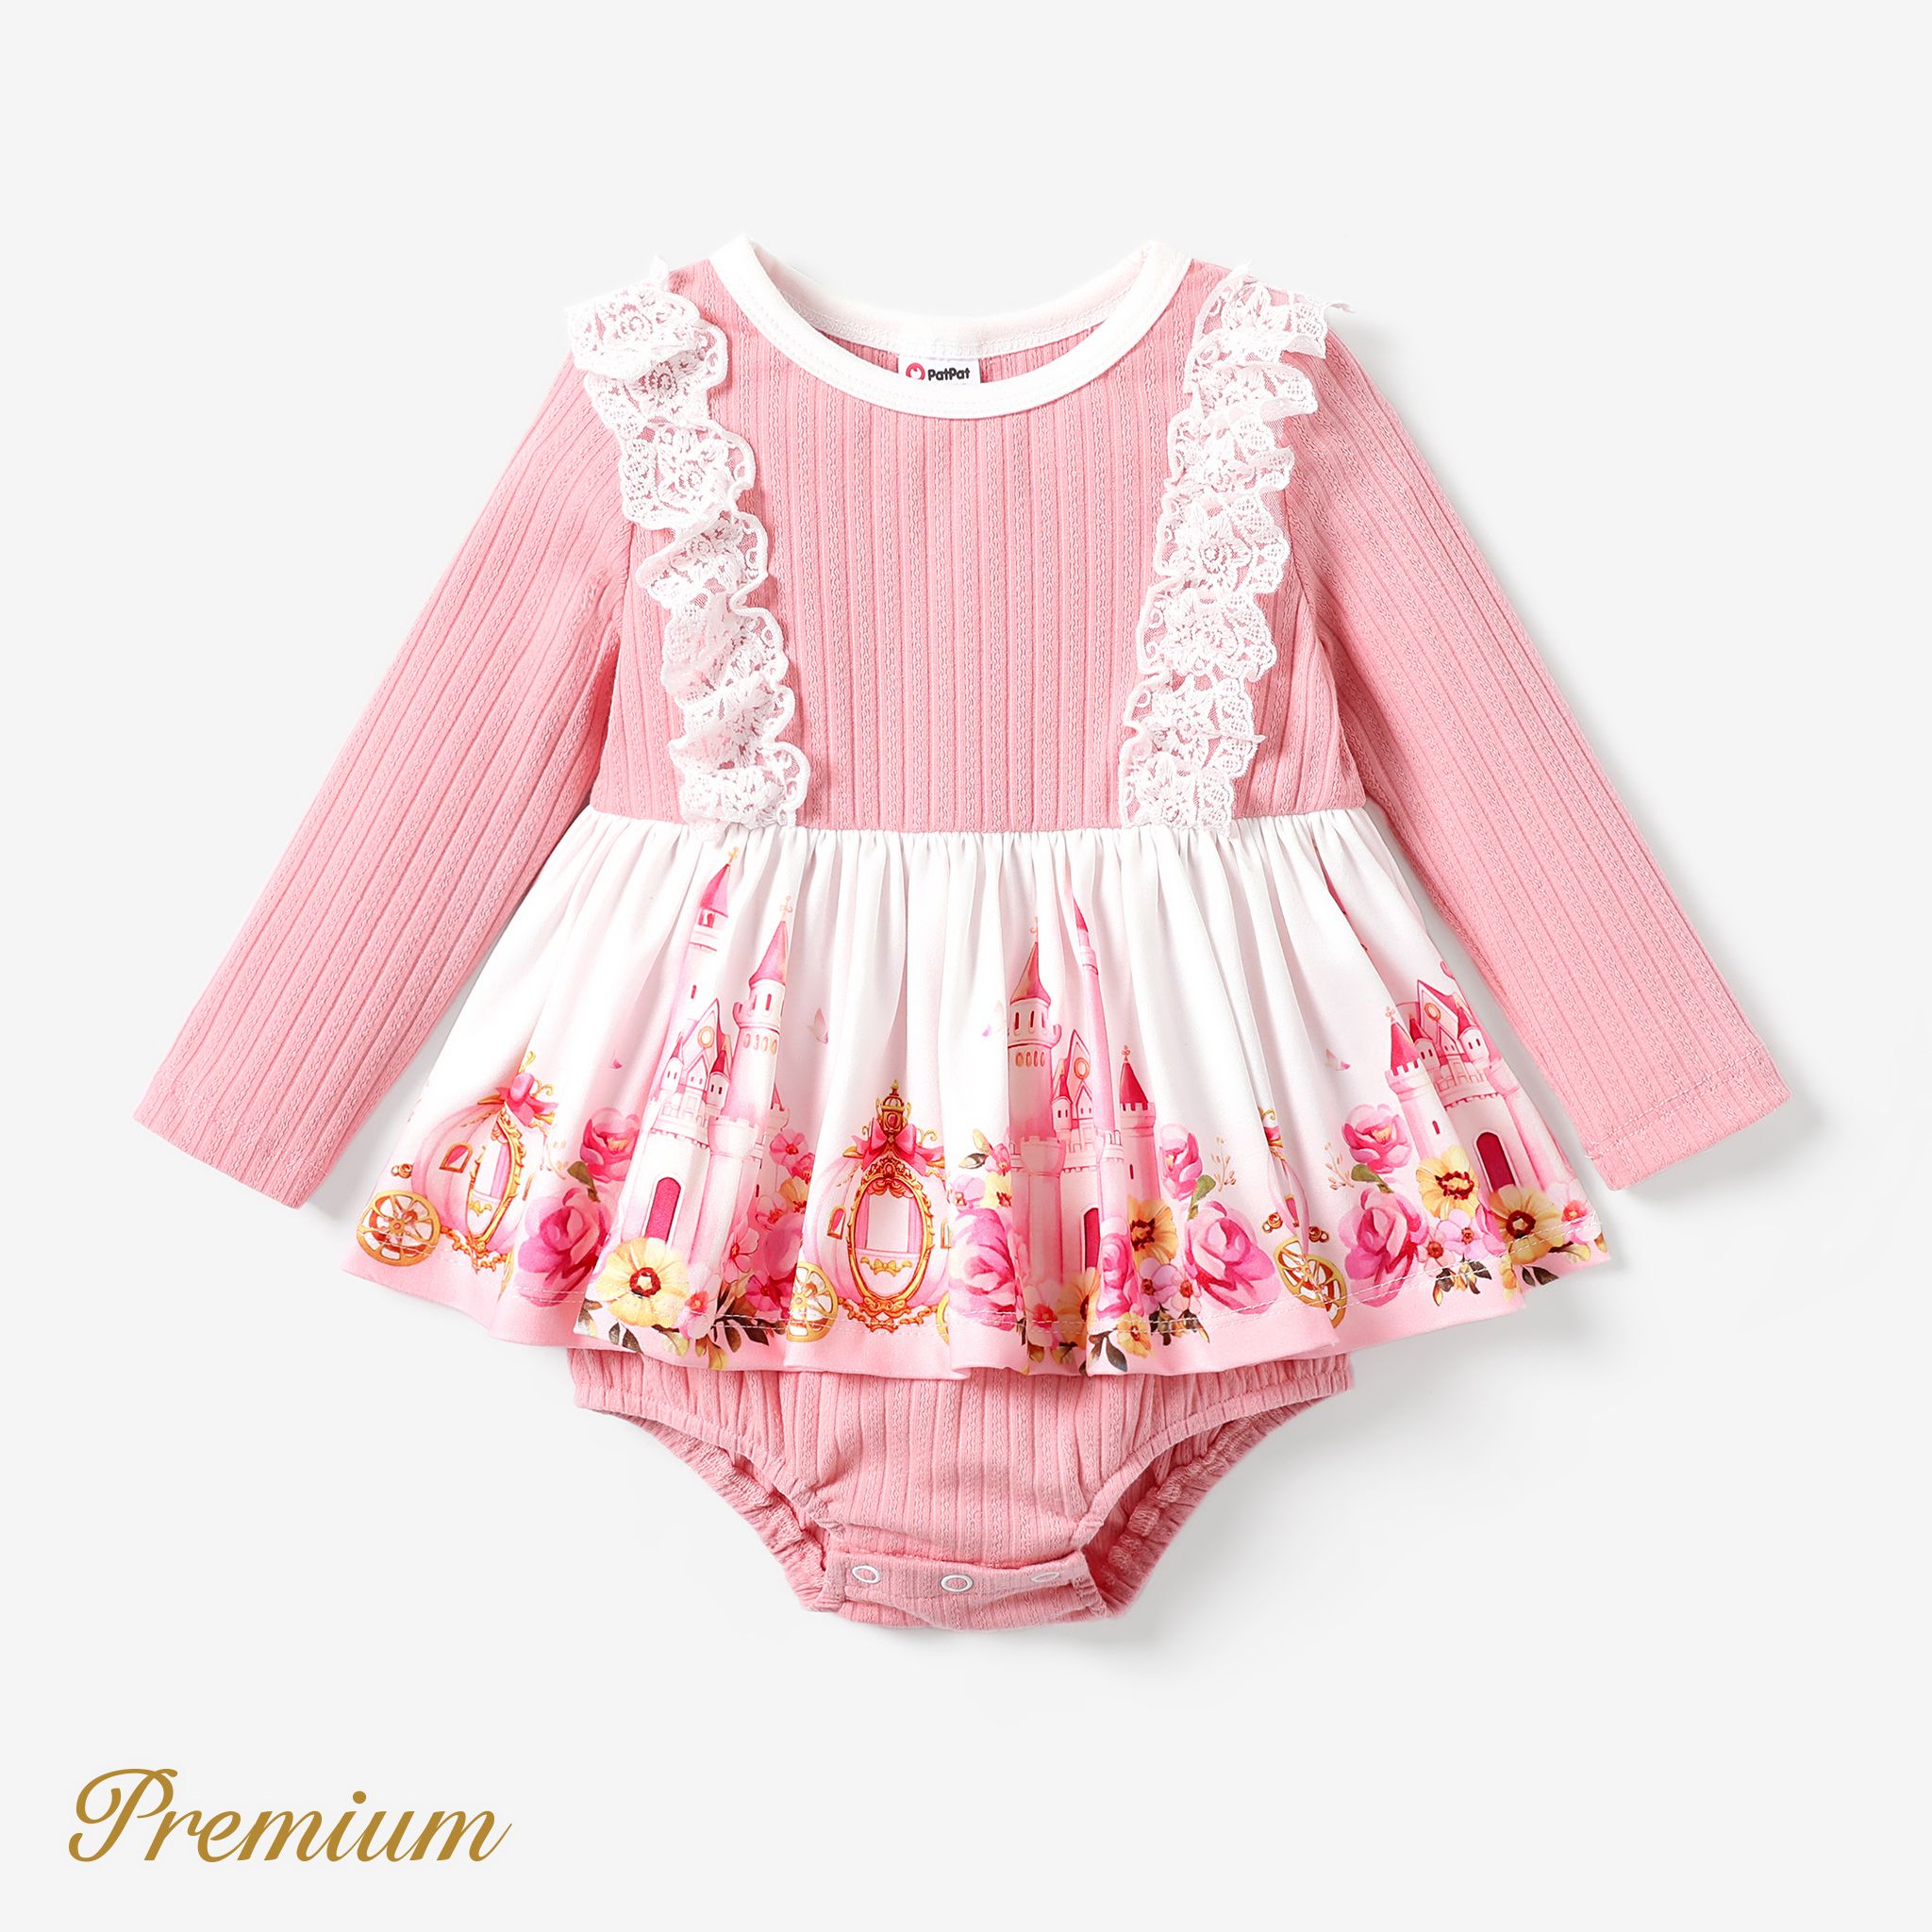 Baby Girl Elegant Flower Romper/Dress With Ruffle Edge